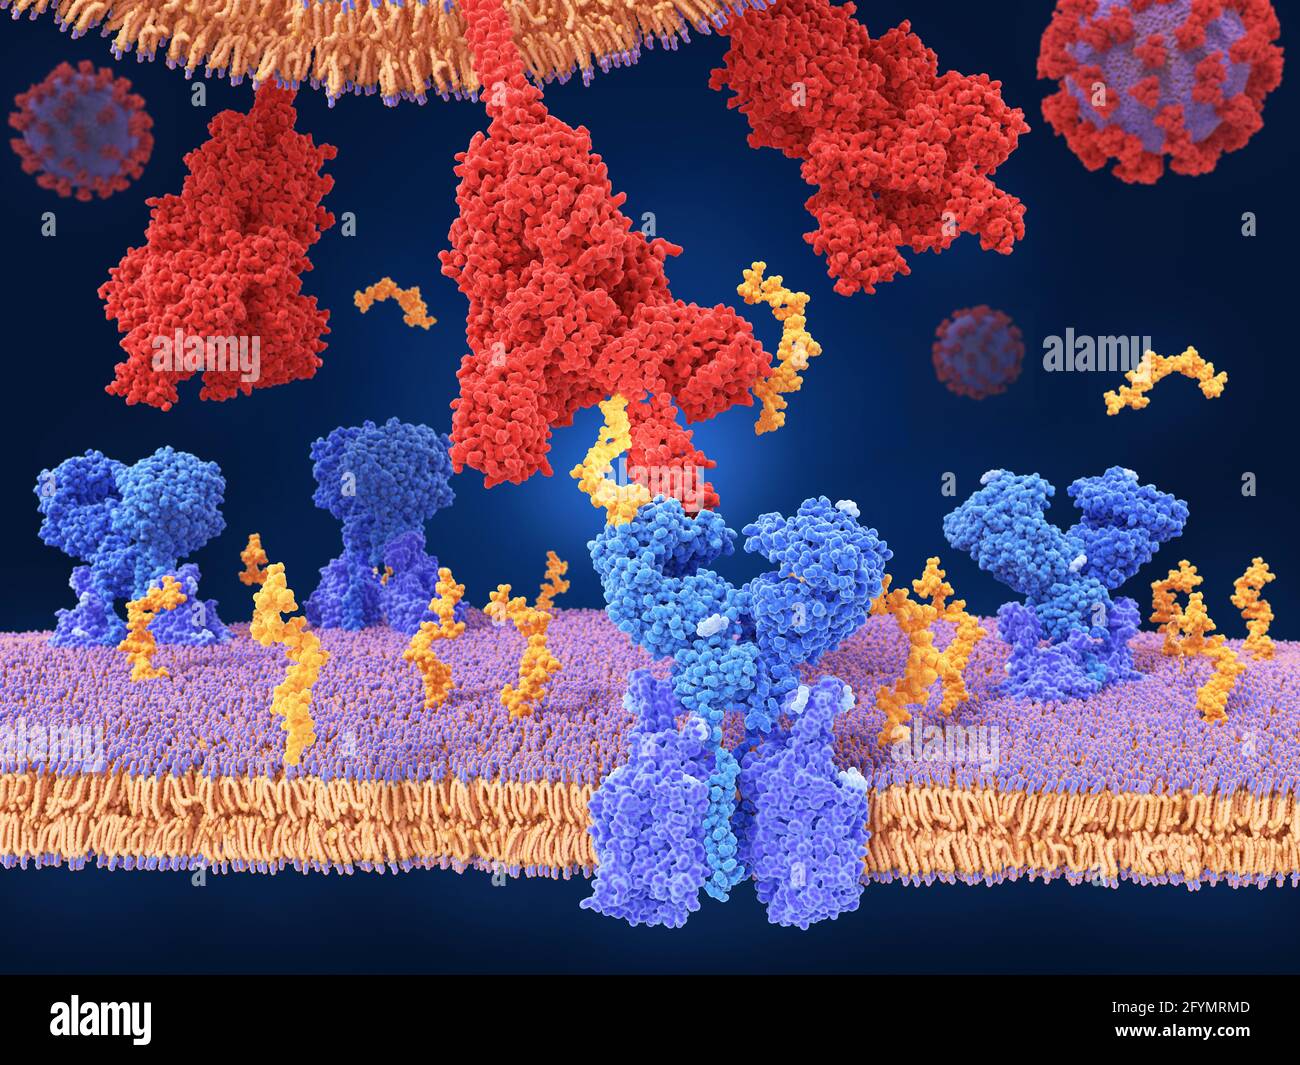 Coronavirus spike protein and receptor, illustration Stock Photo